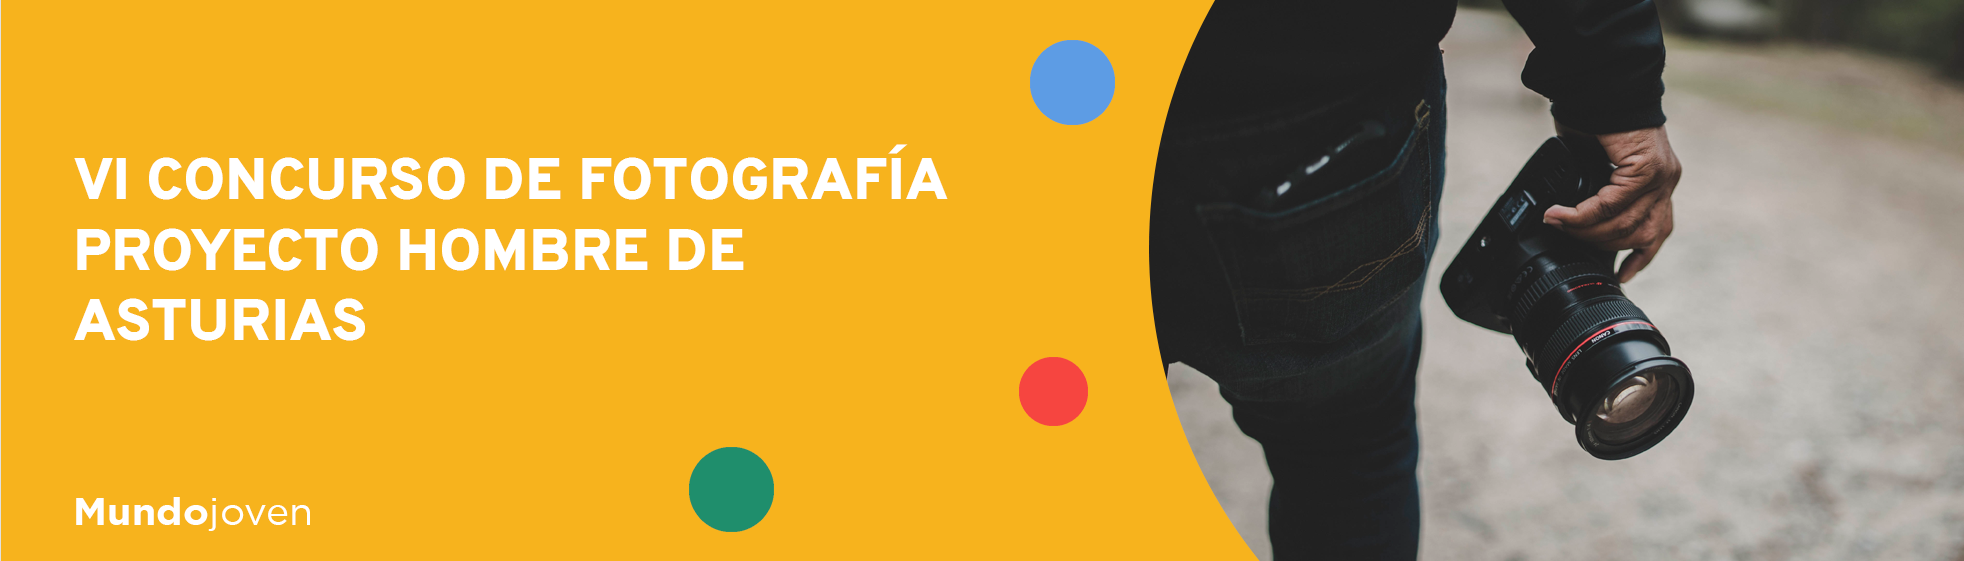 VI Concurso de Fotografía Proyecto Hombre de Asturias